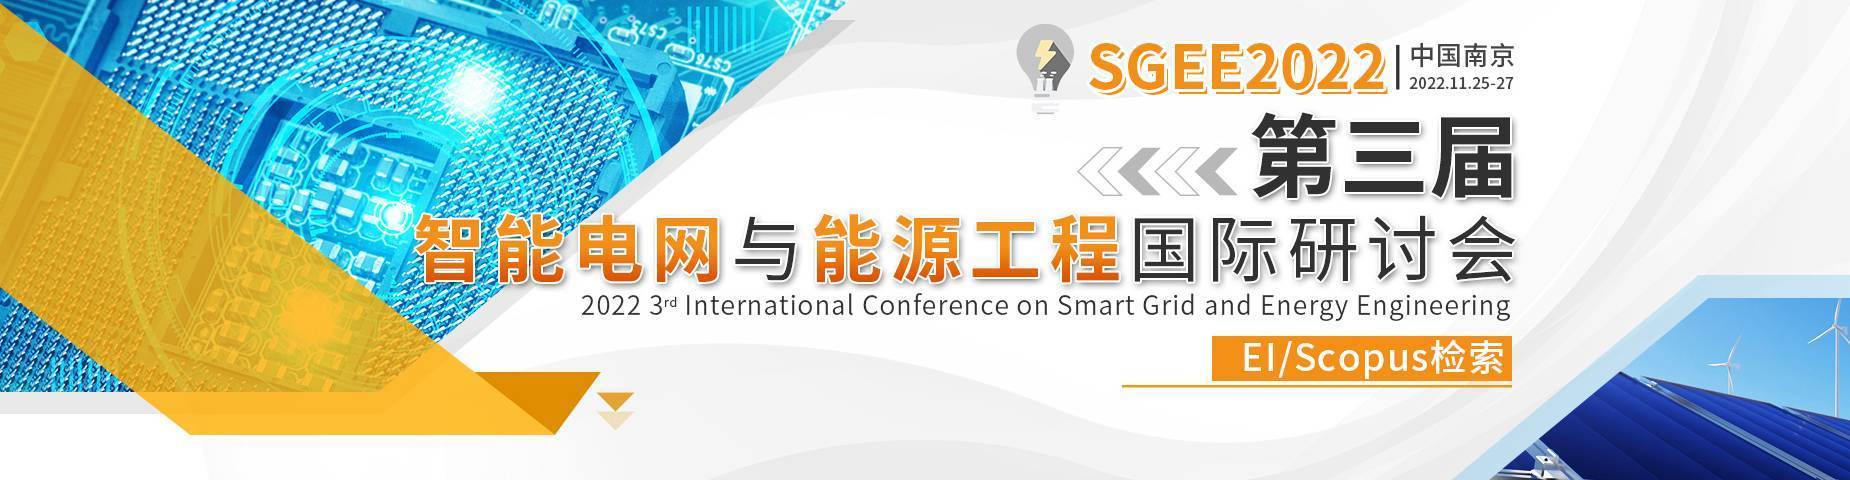 第三屆智能電網與能源工程國際研討會(SGEE2022)